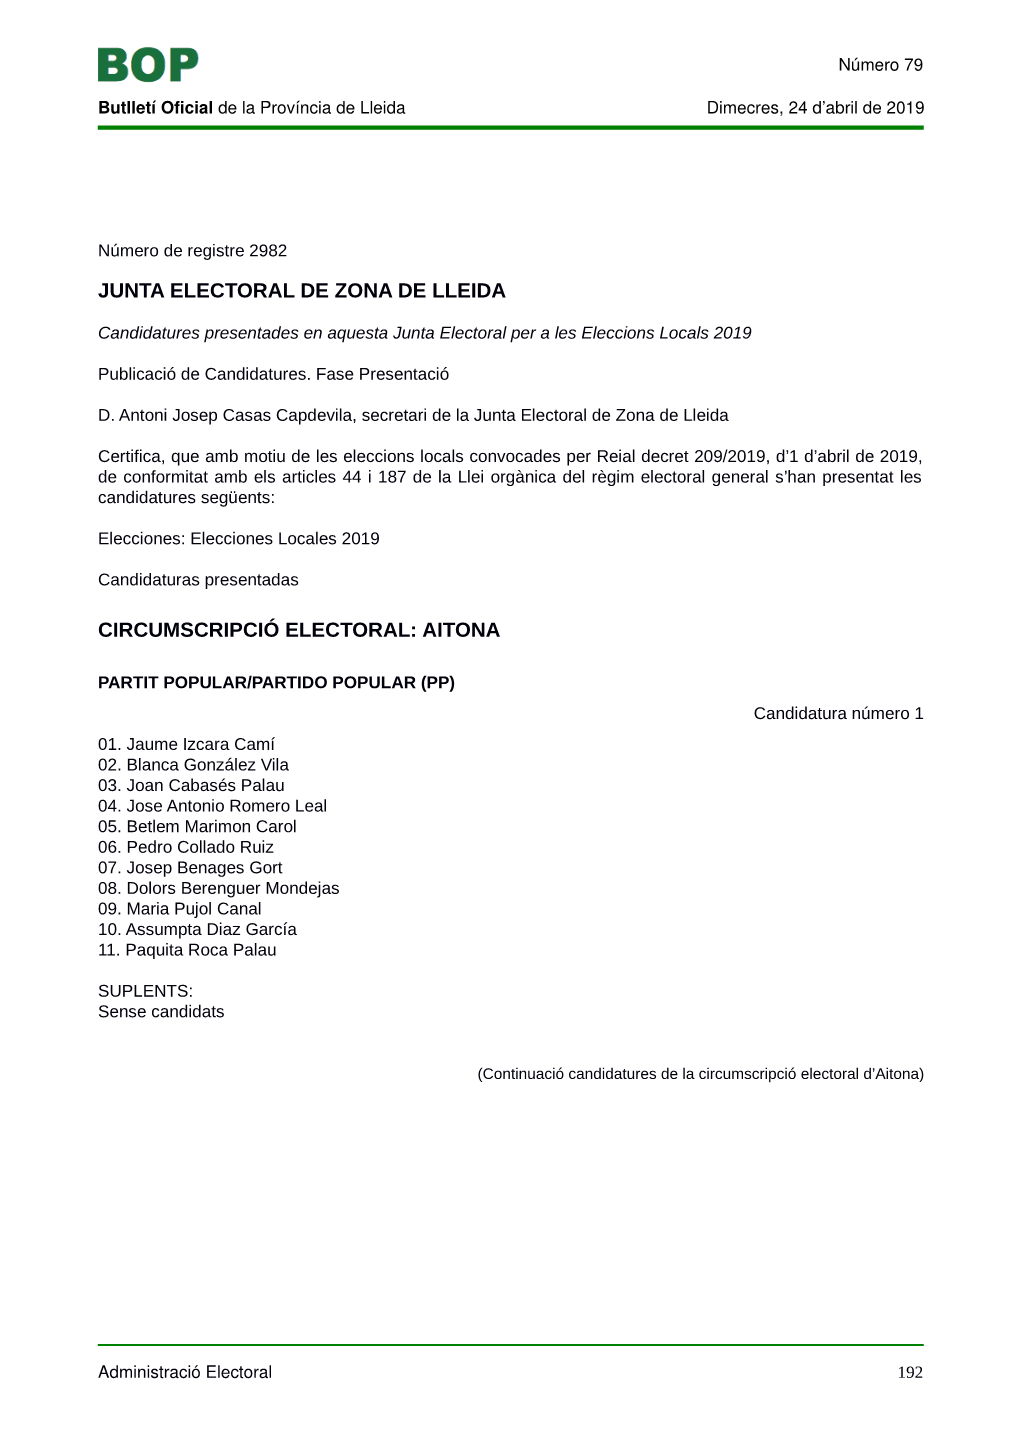 Candidatures Municipals De La Zona De Lleida